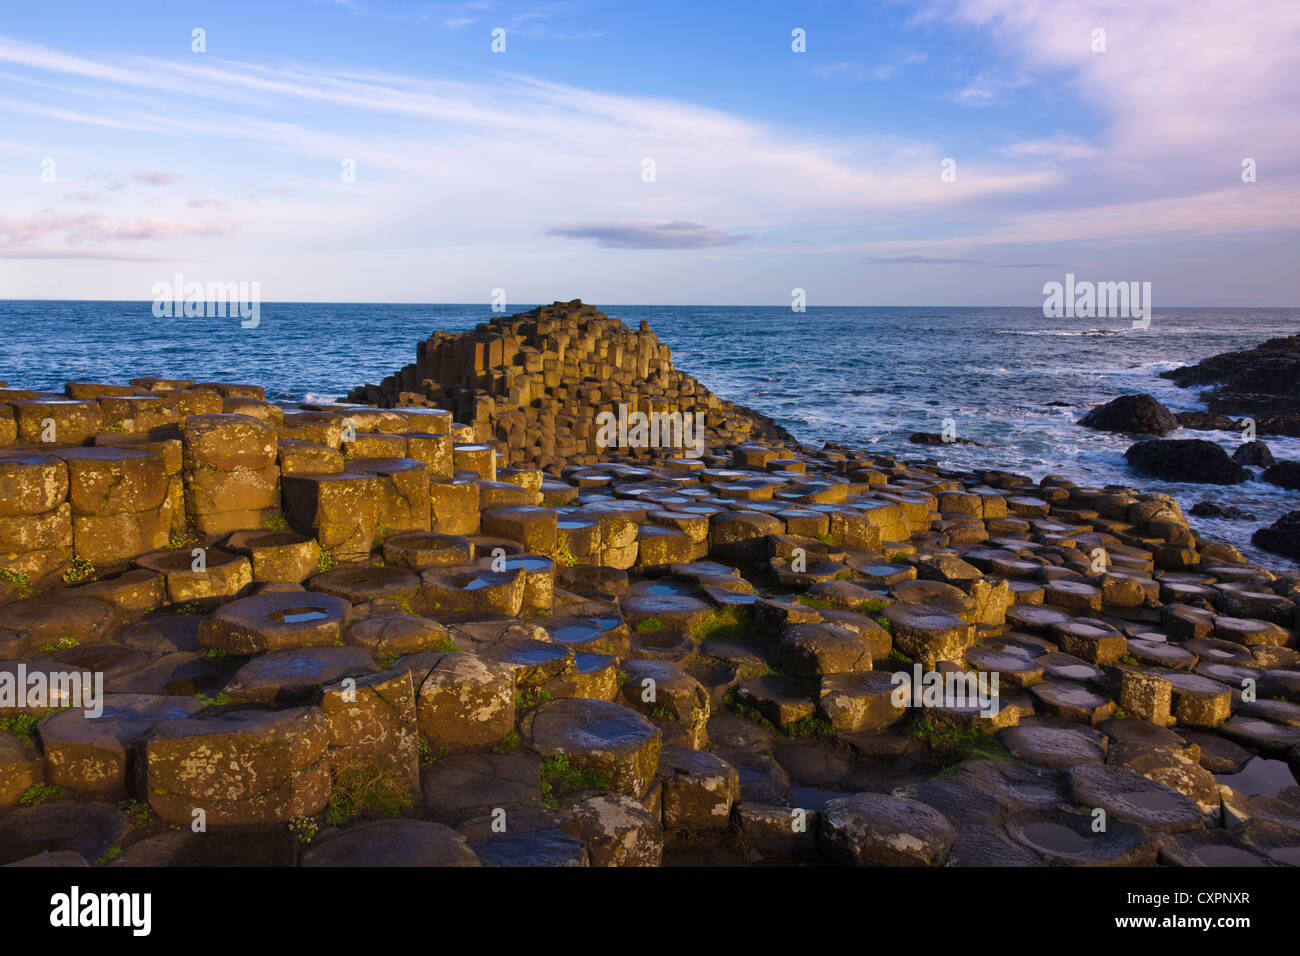 La Formation de la roche basaltique, Giant's Causeway, comté d'Antrim, en Irlande du Nord, Royaume-Uni, Europe Banque D'Images